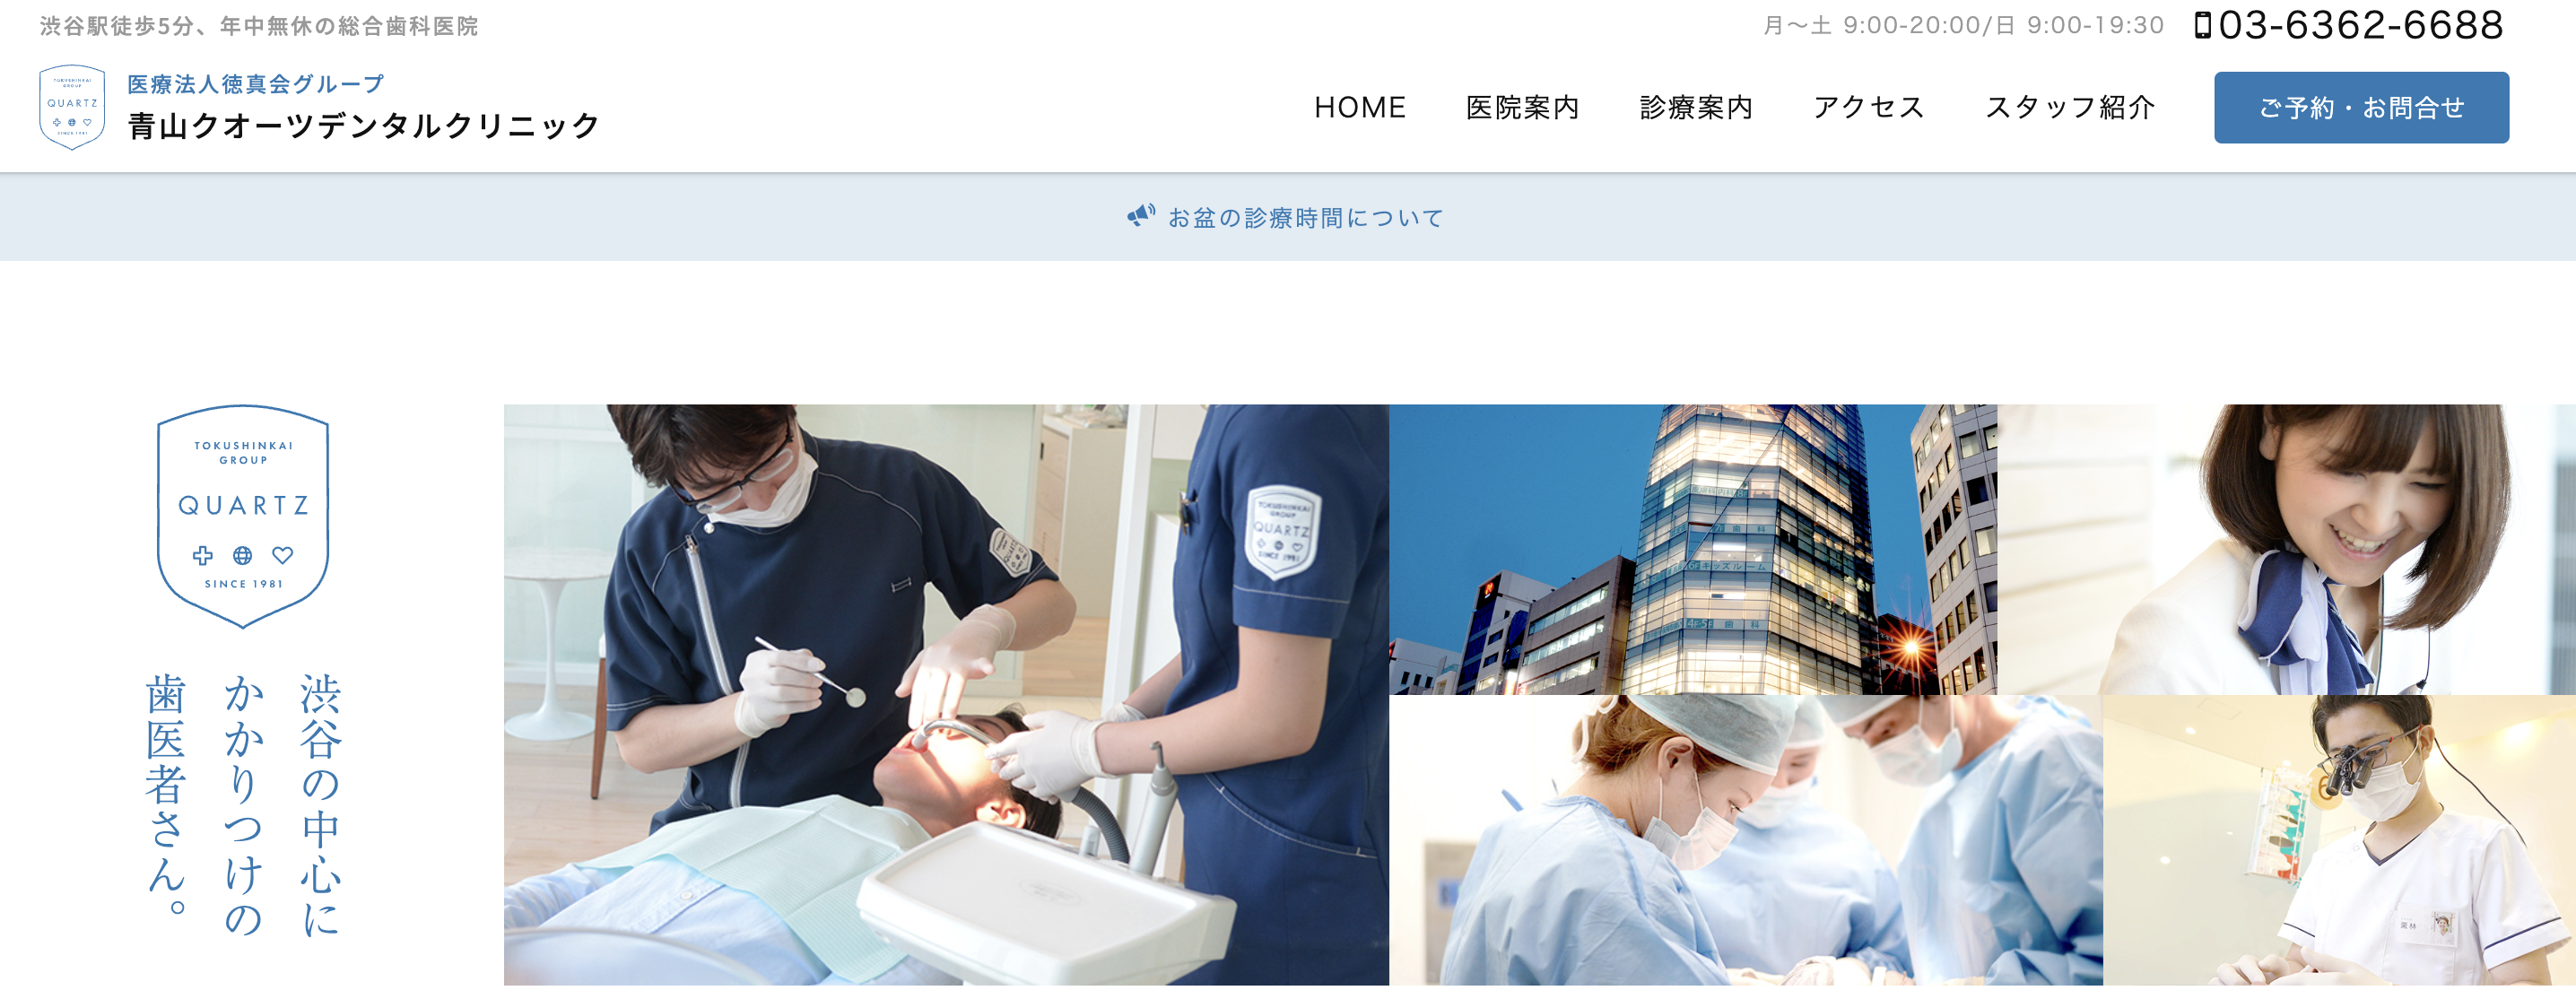 渋谷区のインプラント治療におすすめの歯科クリニック5選 青山クオーツデンタルクリニック